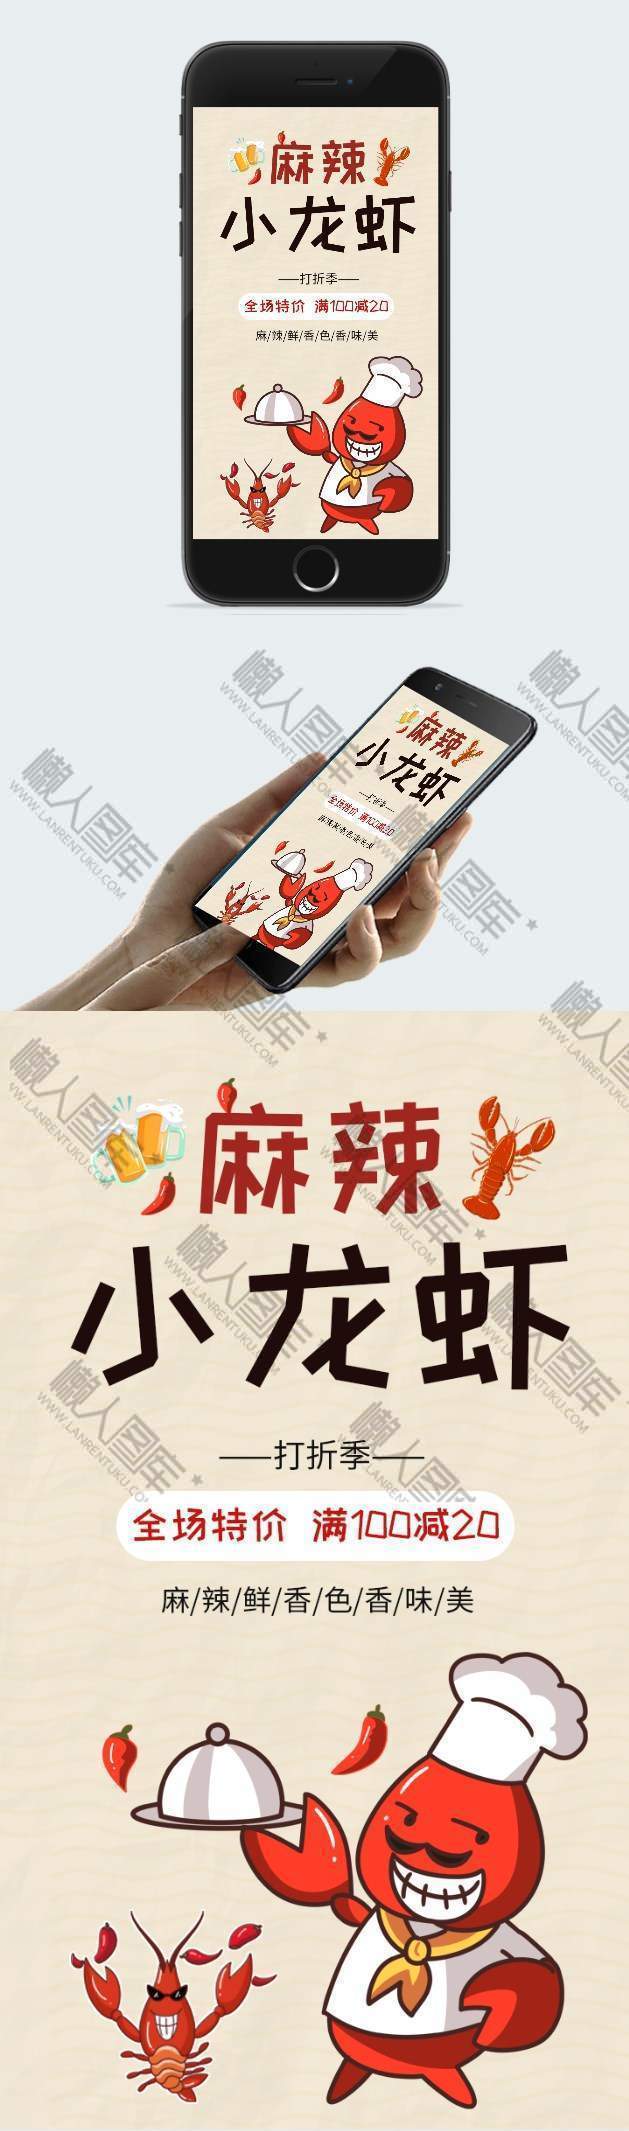 麻辣小龙虾满减促销手机海报